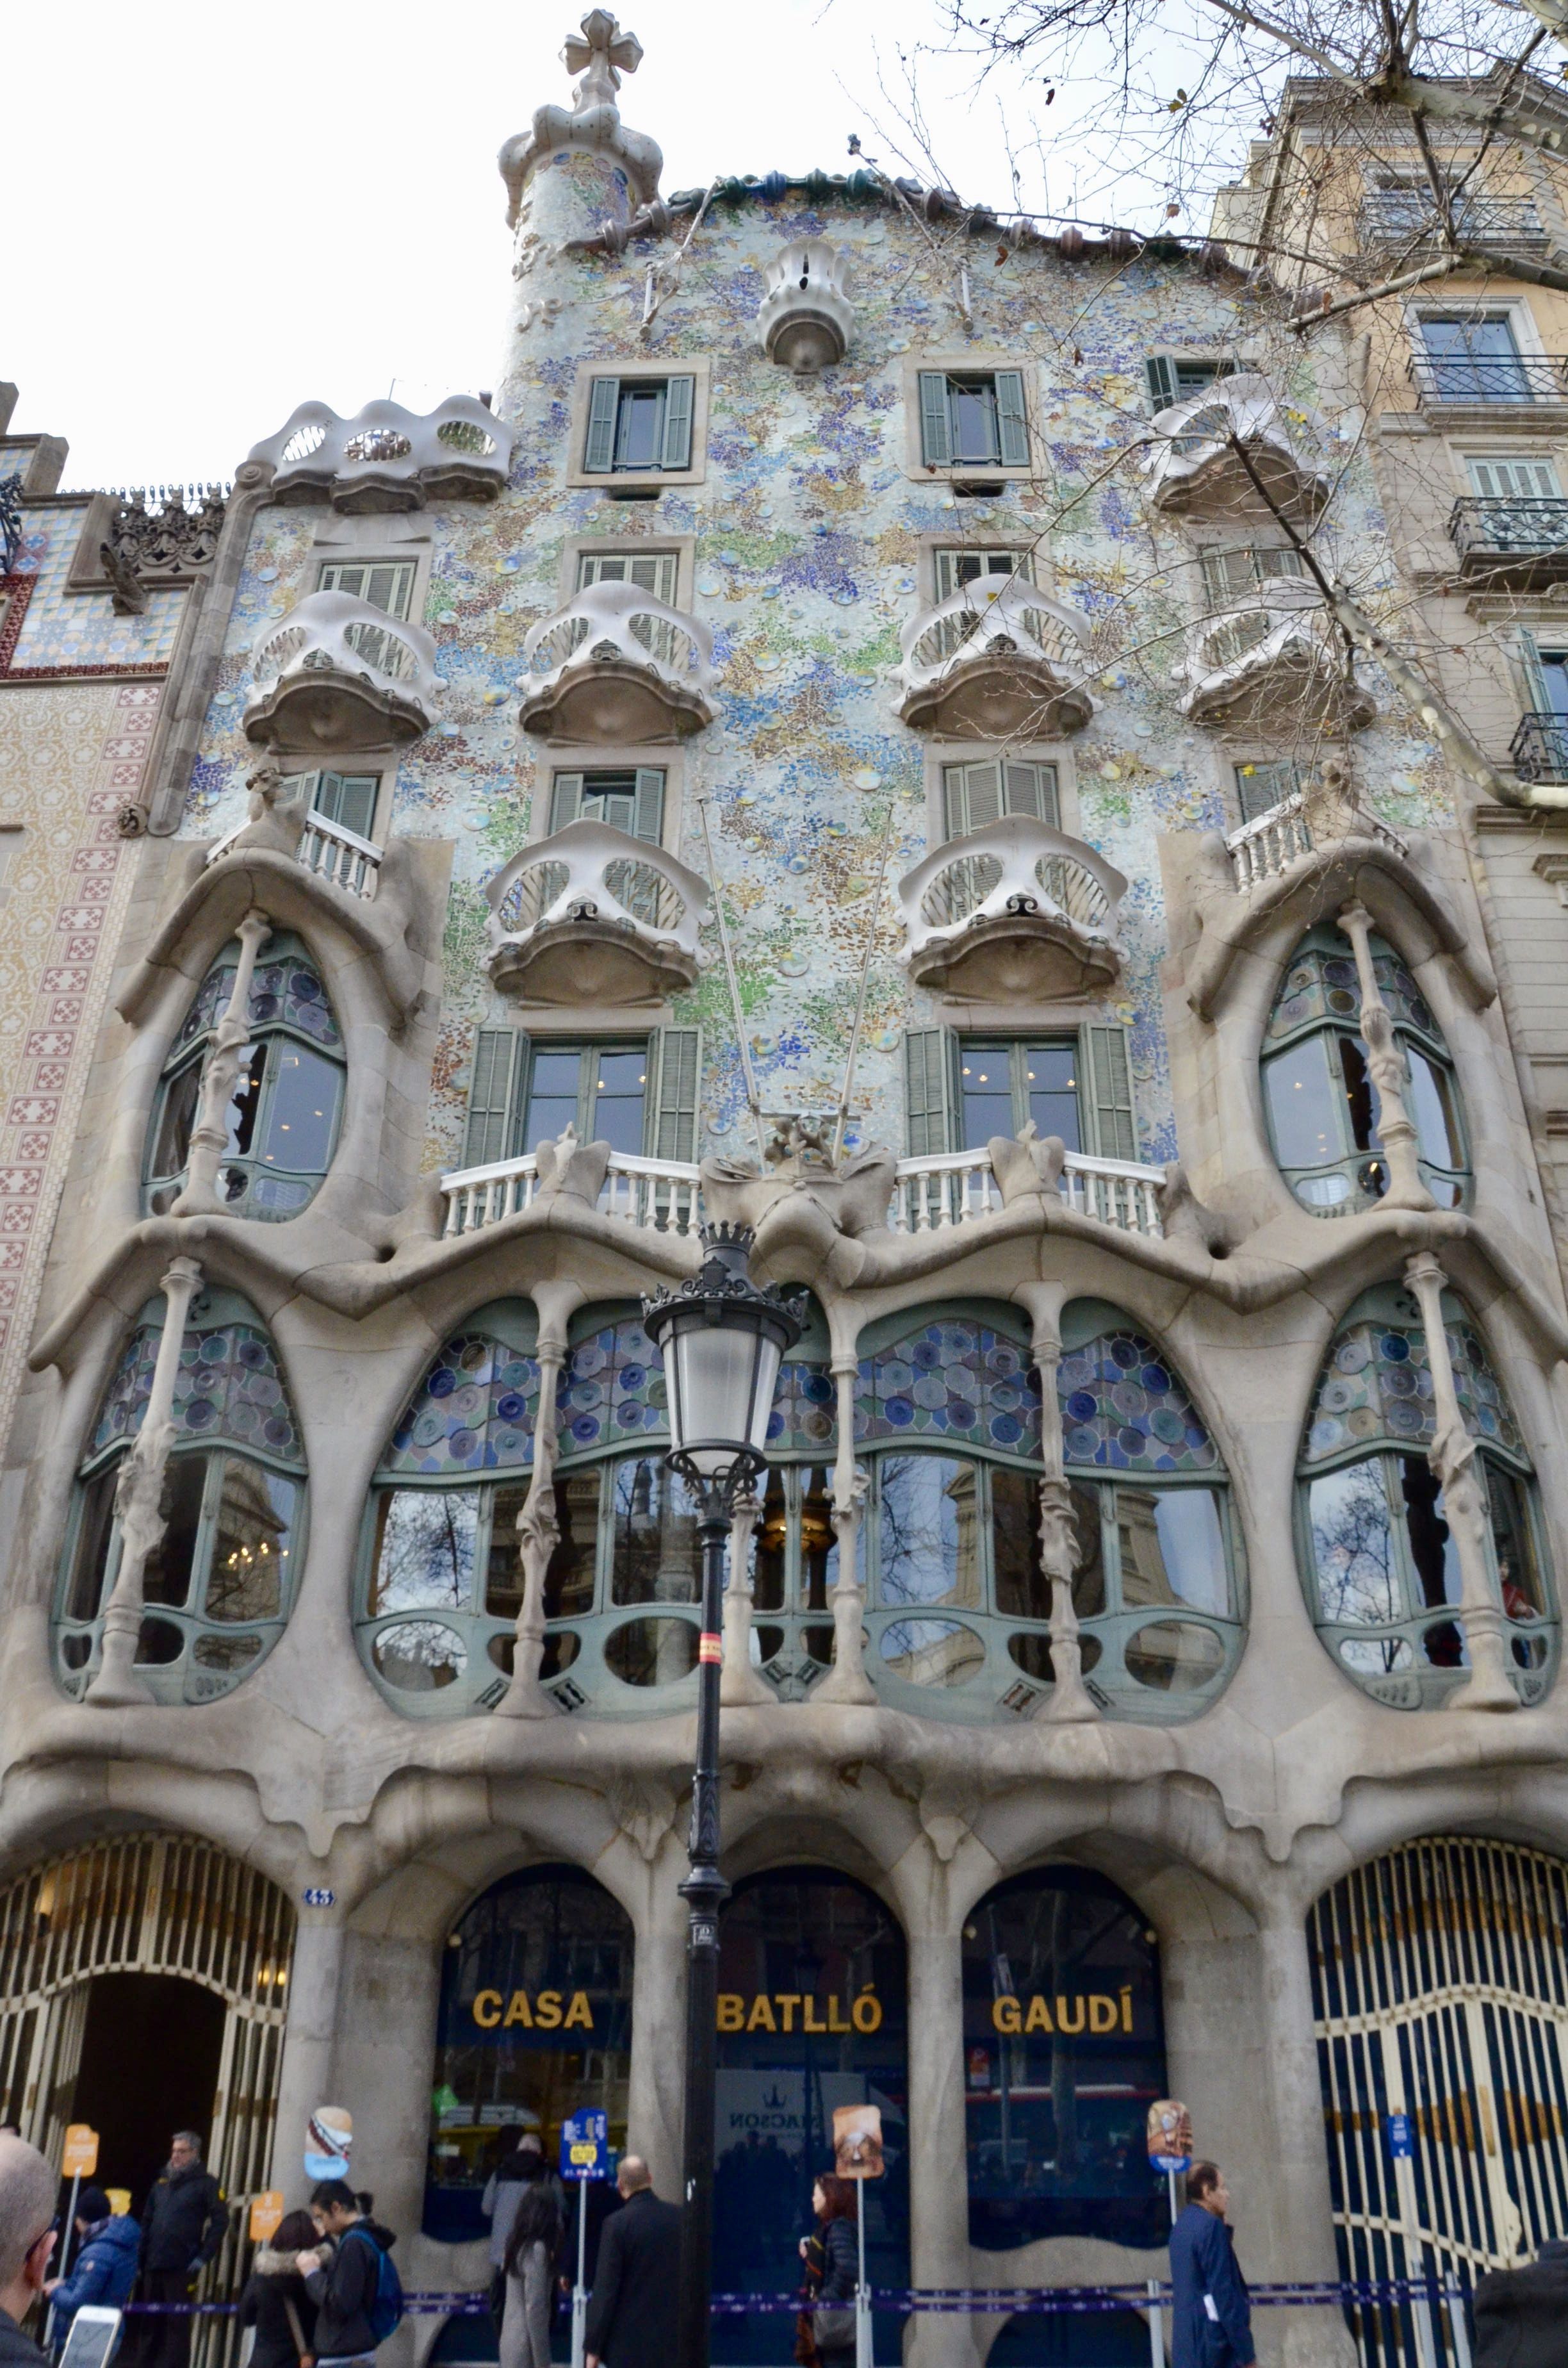 Casa Batlló, Lugar de interés, Barcelona: Todo el año ...